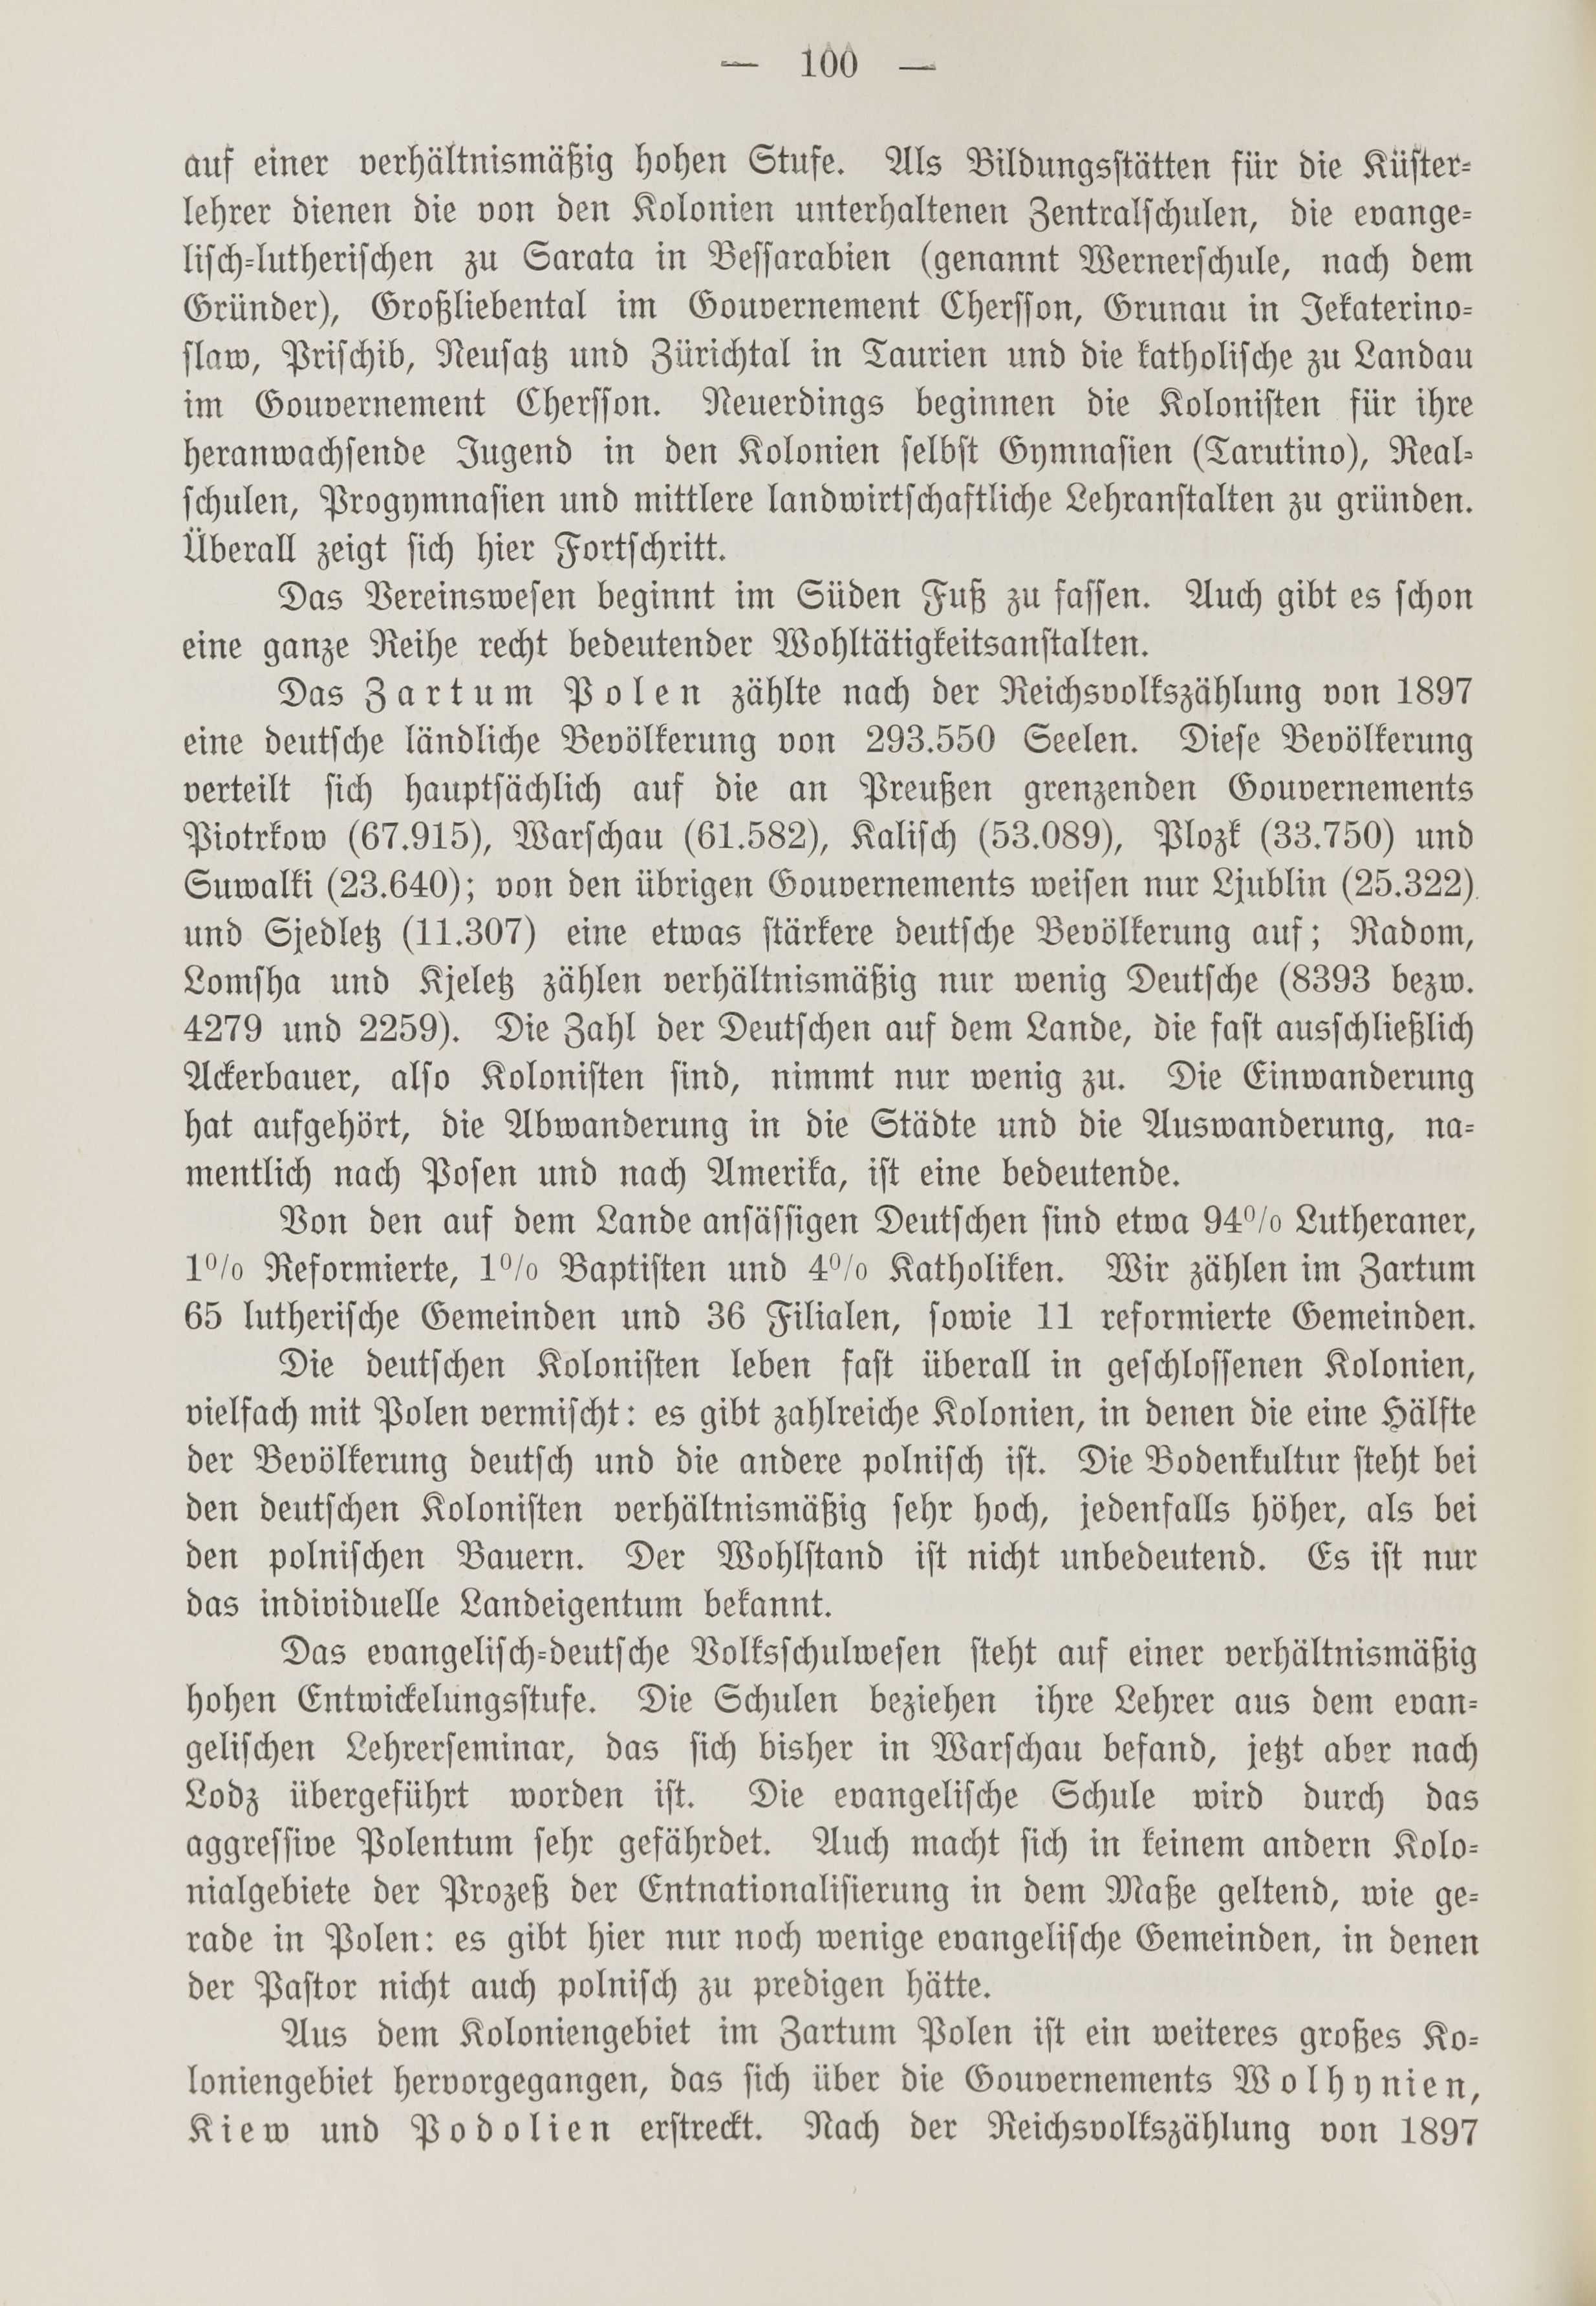 Deutsche Monatsschrift für Russland [1] (1912) | 108. (100) Основной текст